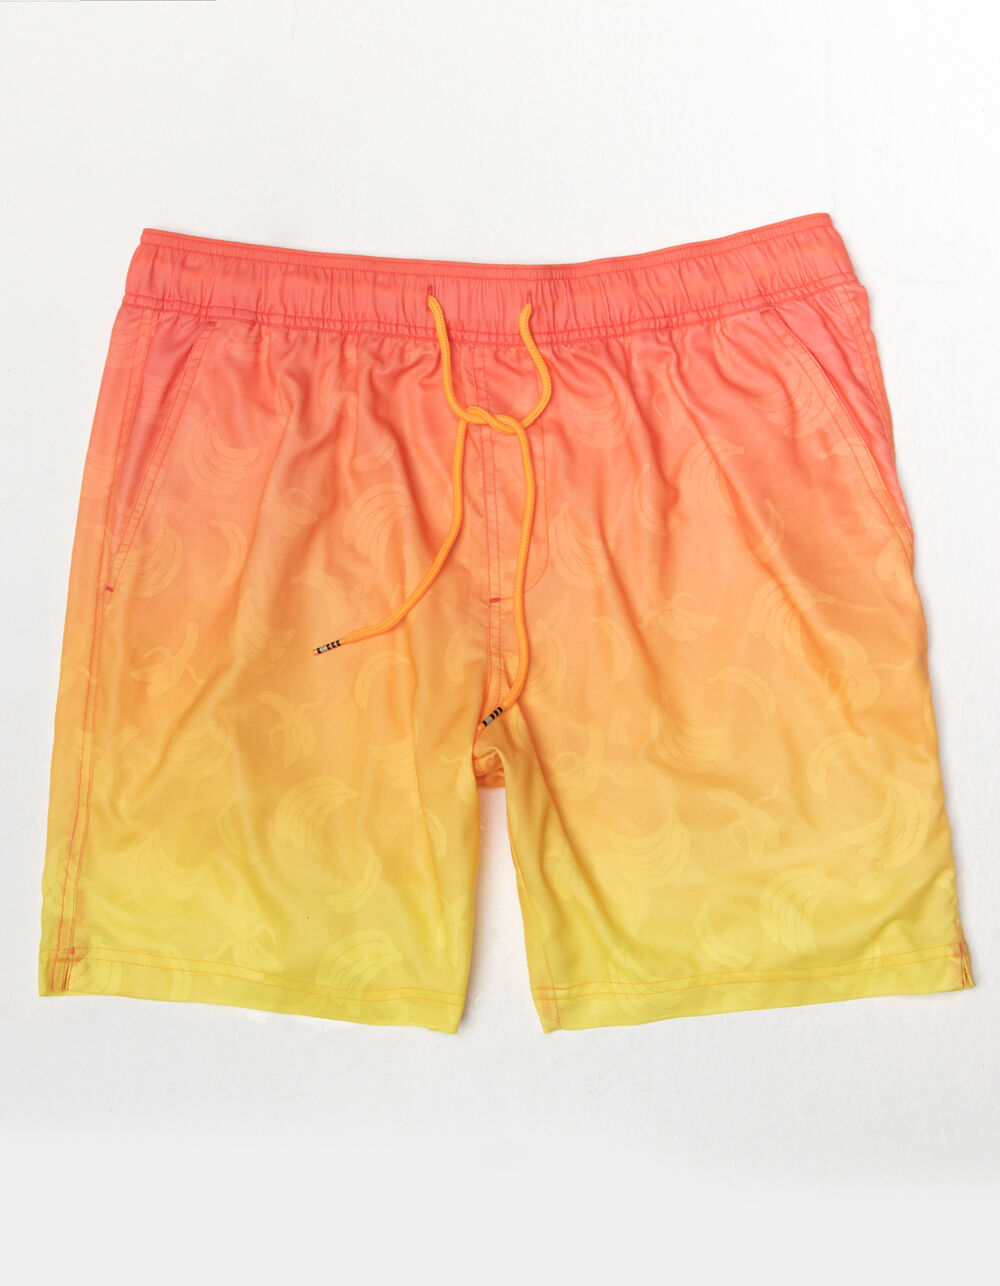 Butter Yellow TnaBUTTER 7” Bike Shorts (M) + Malibu Tank (Lol